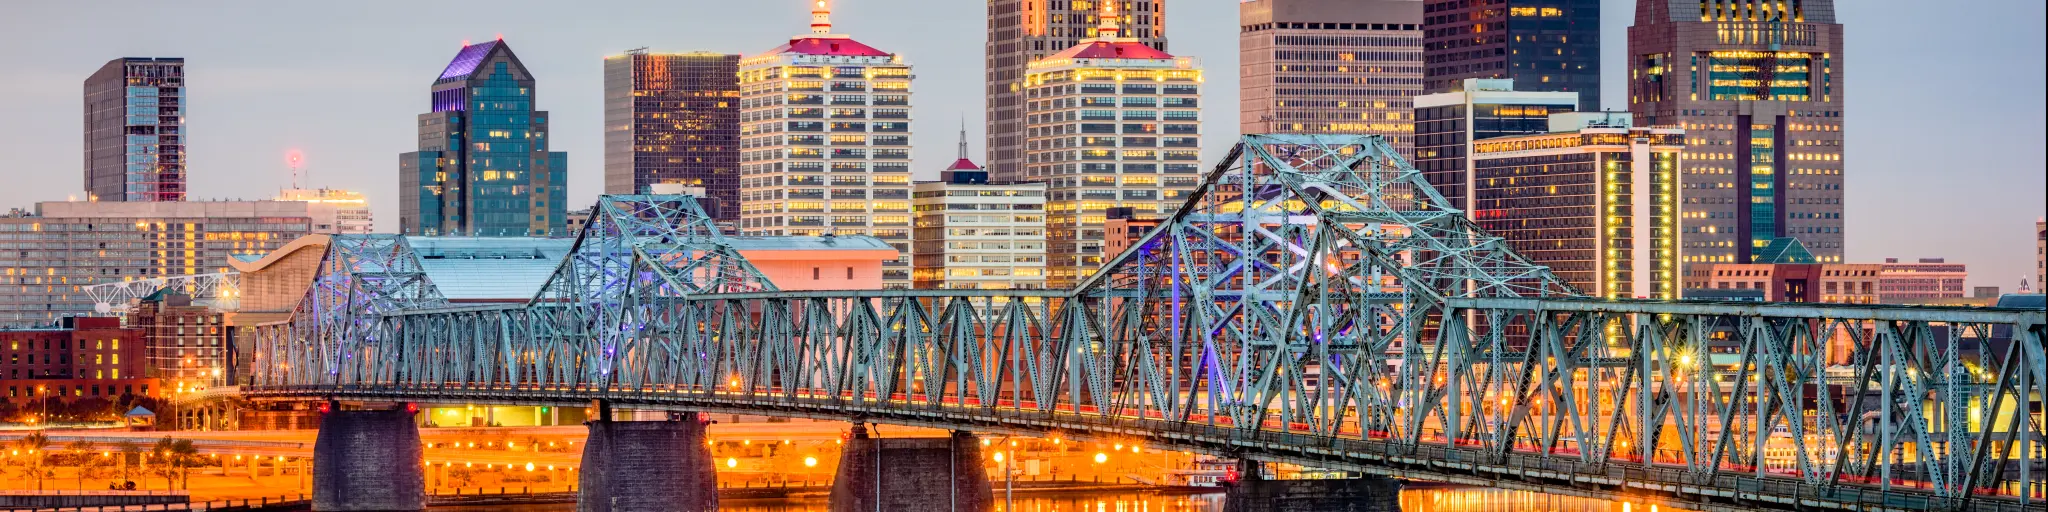 Louisville, Kentucky, USA skyline on the river